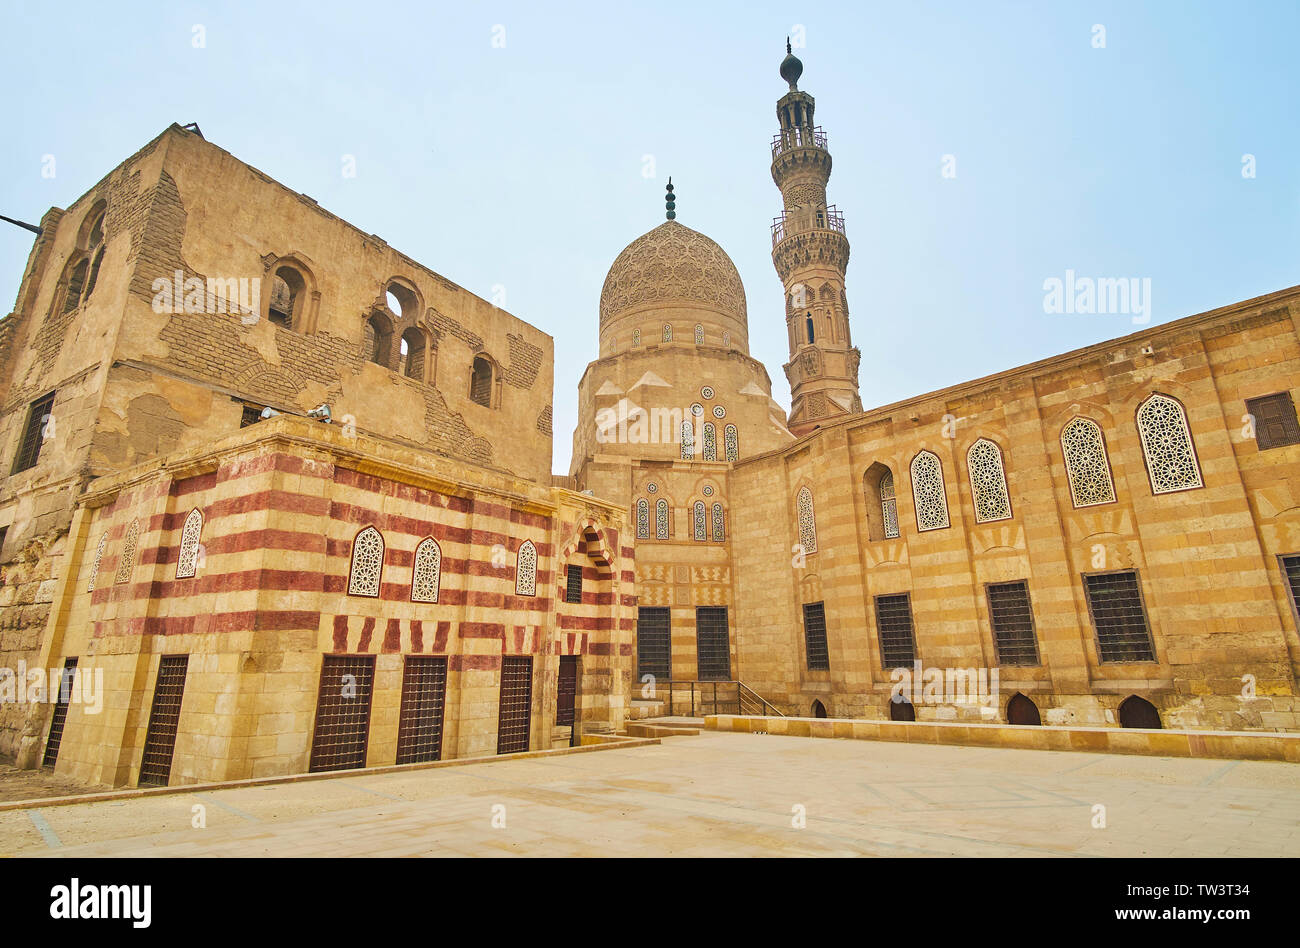 Mamluk architettura in stile medievale di Amir Khayrbak complesso, costruito in epoca ottomana e situato in Al Wazir street del Cairo islamico, Egitto Foto Stock